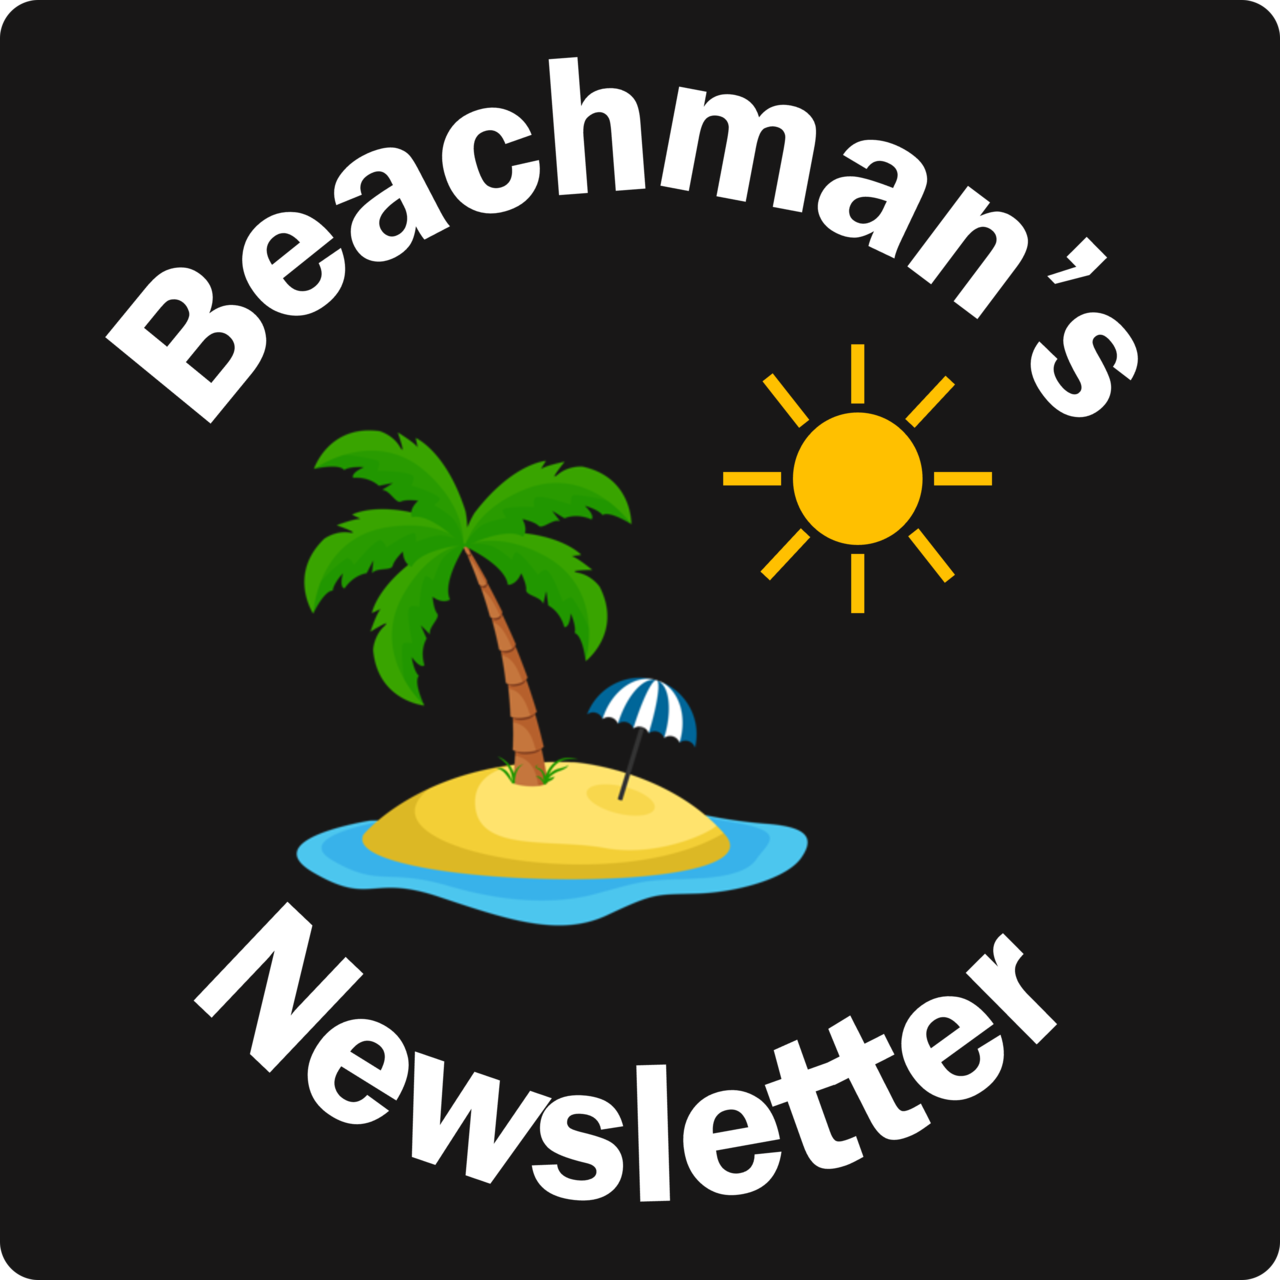 Artwork for Beachman’s Newsletter